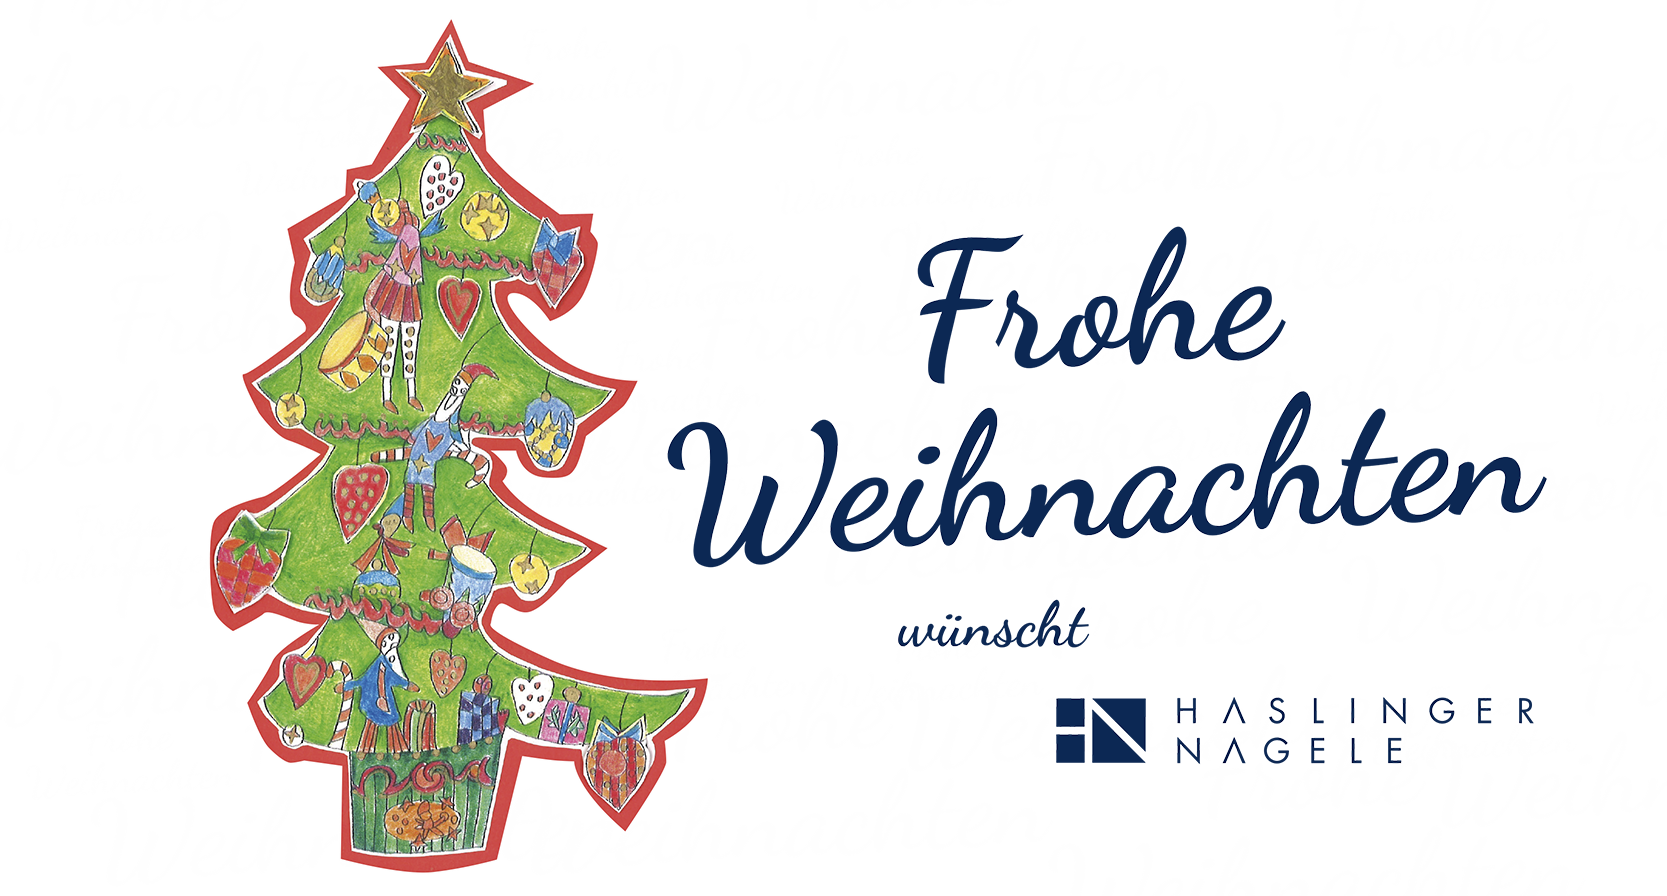 Frohe Weihnachten wünscht Haslinger / Nagele, Illustration: Konrad Wartbichler